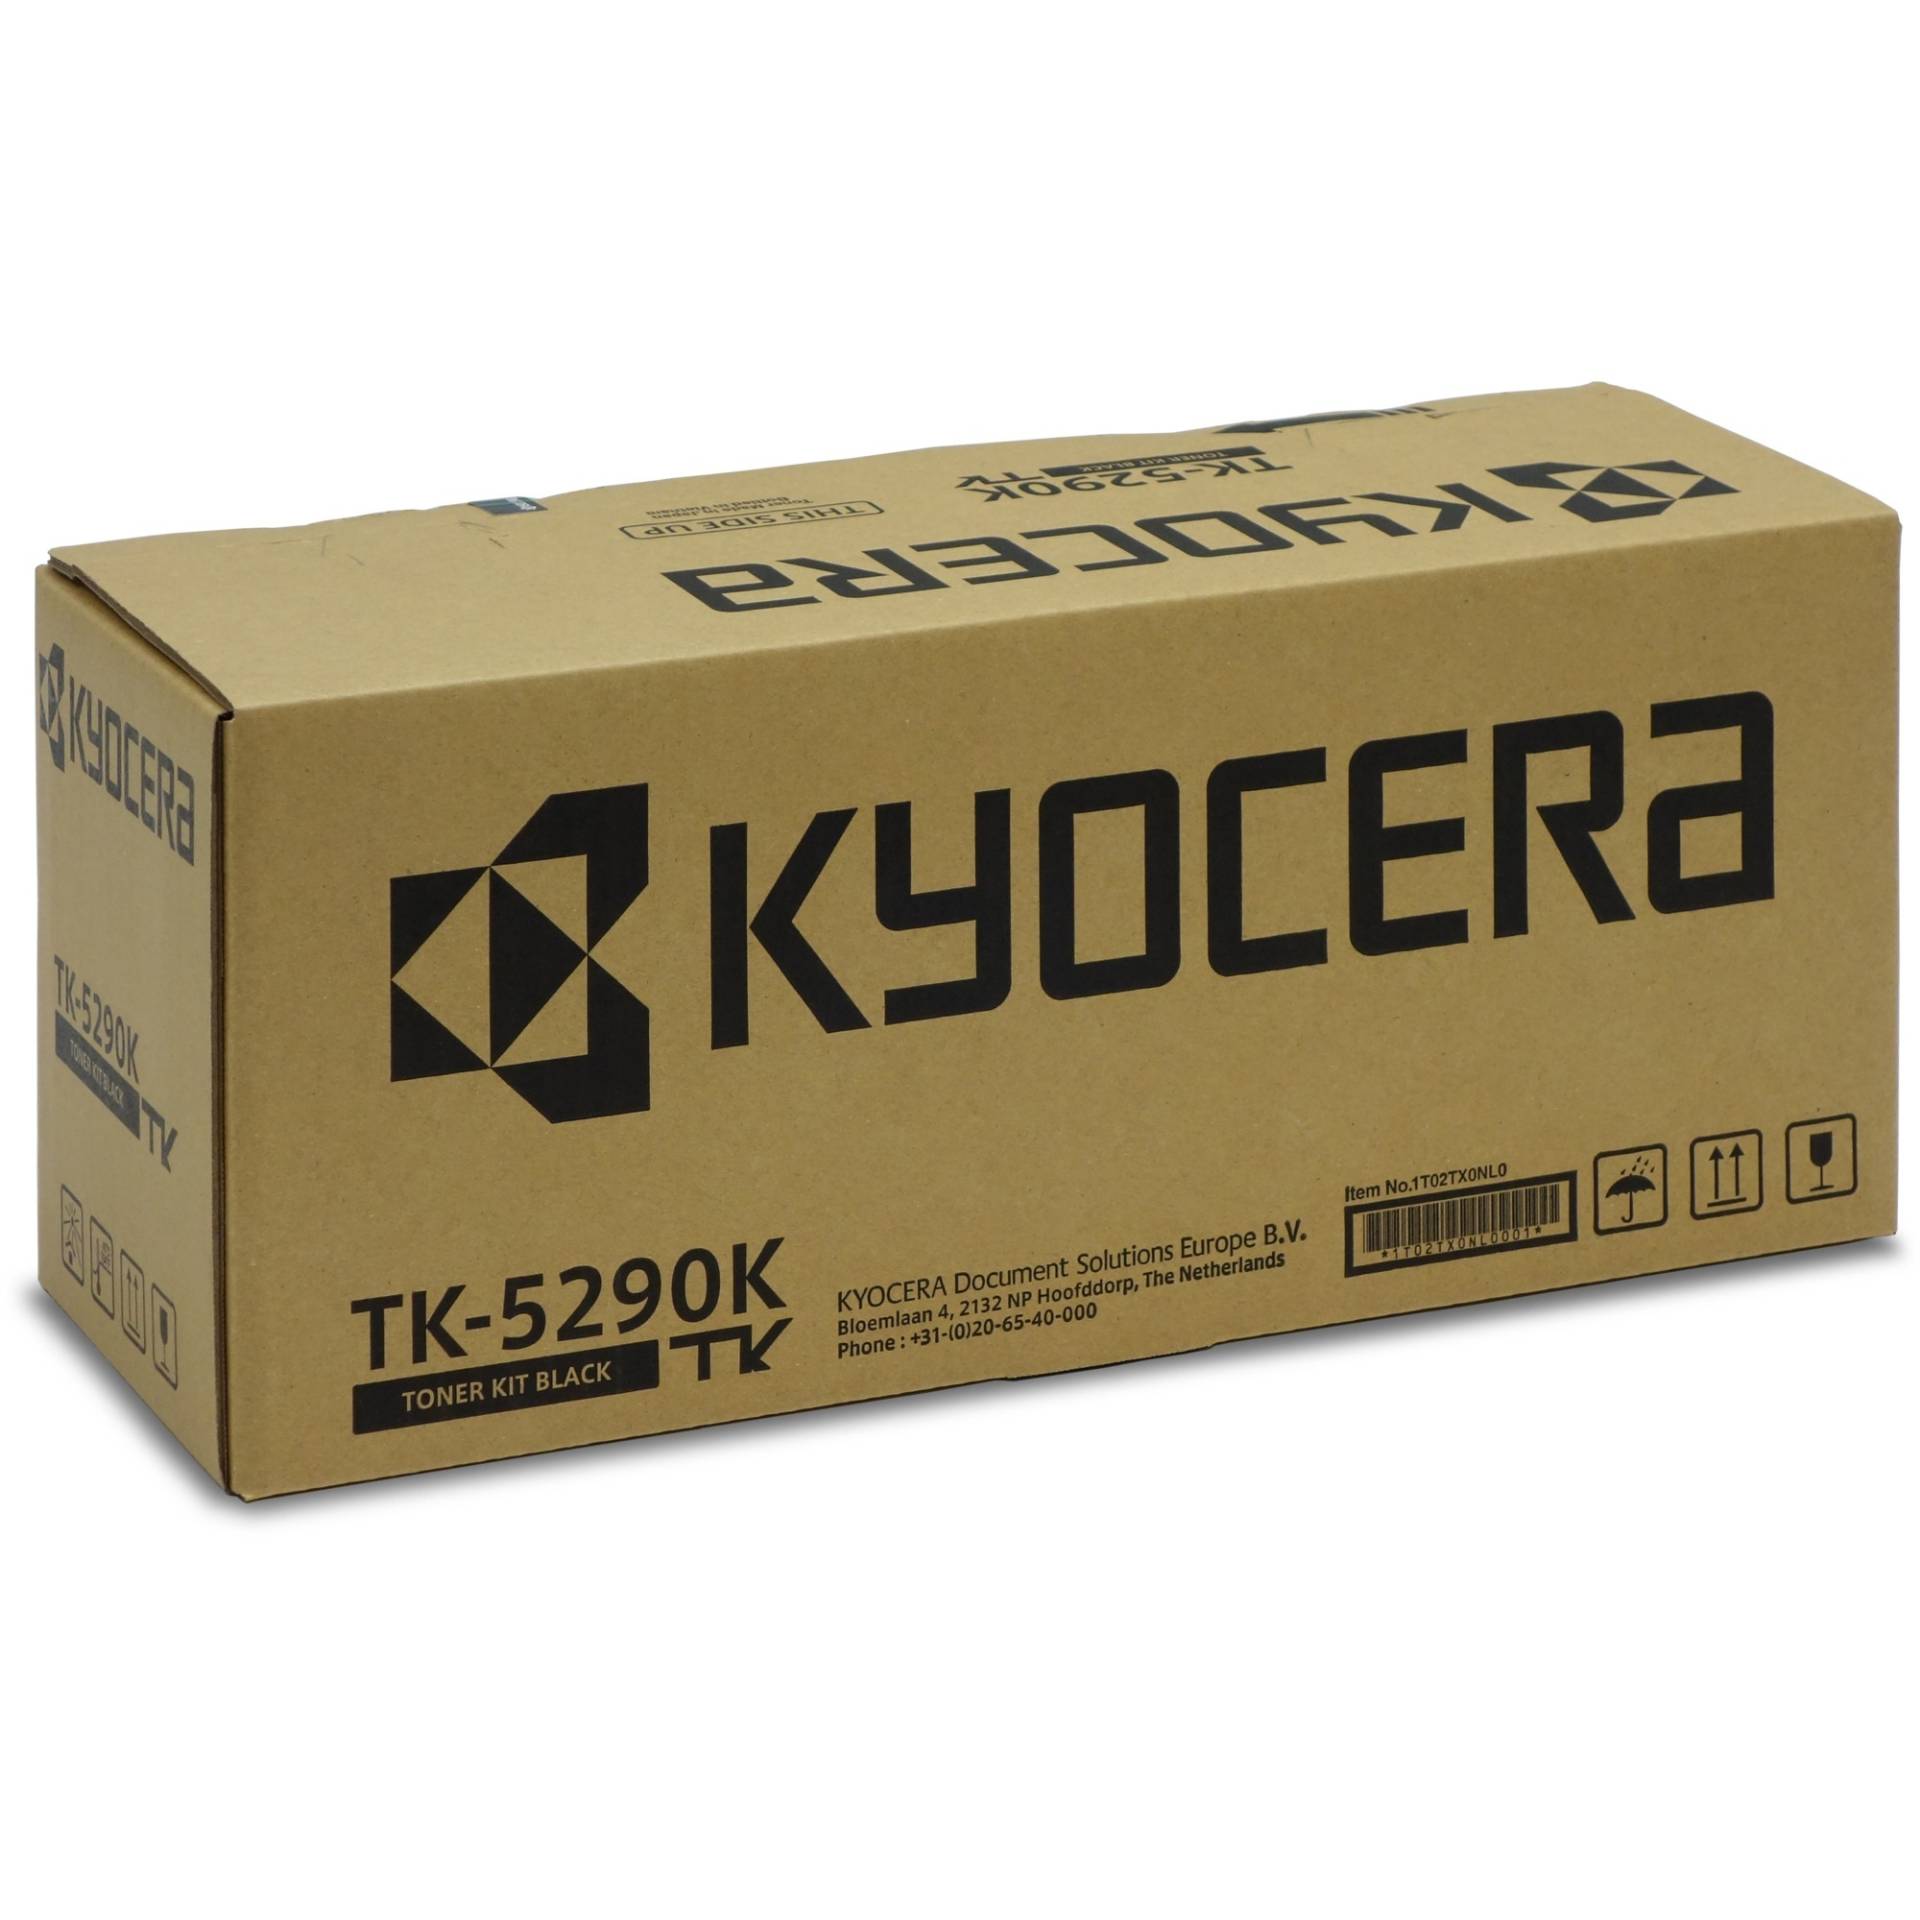 Toner schwarz TK-5290K von Kyocera